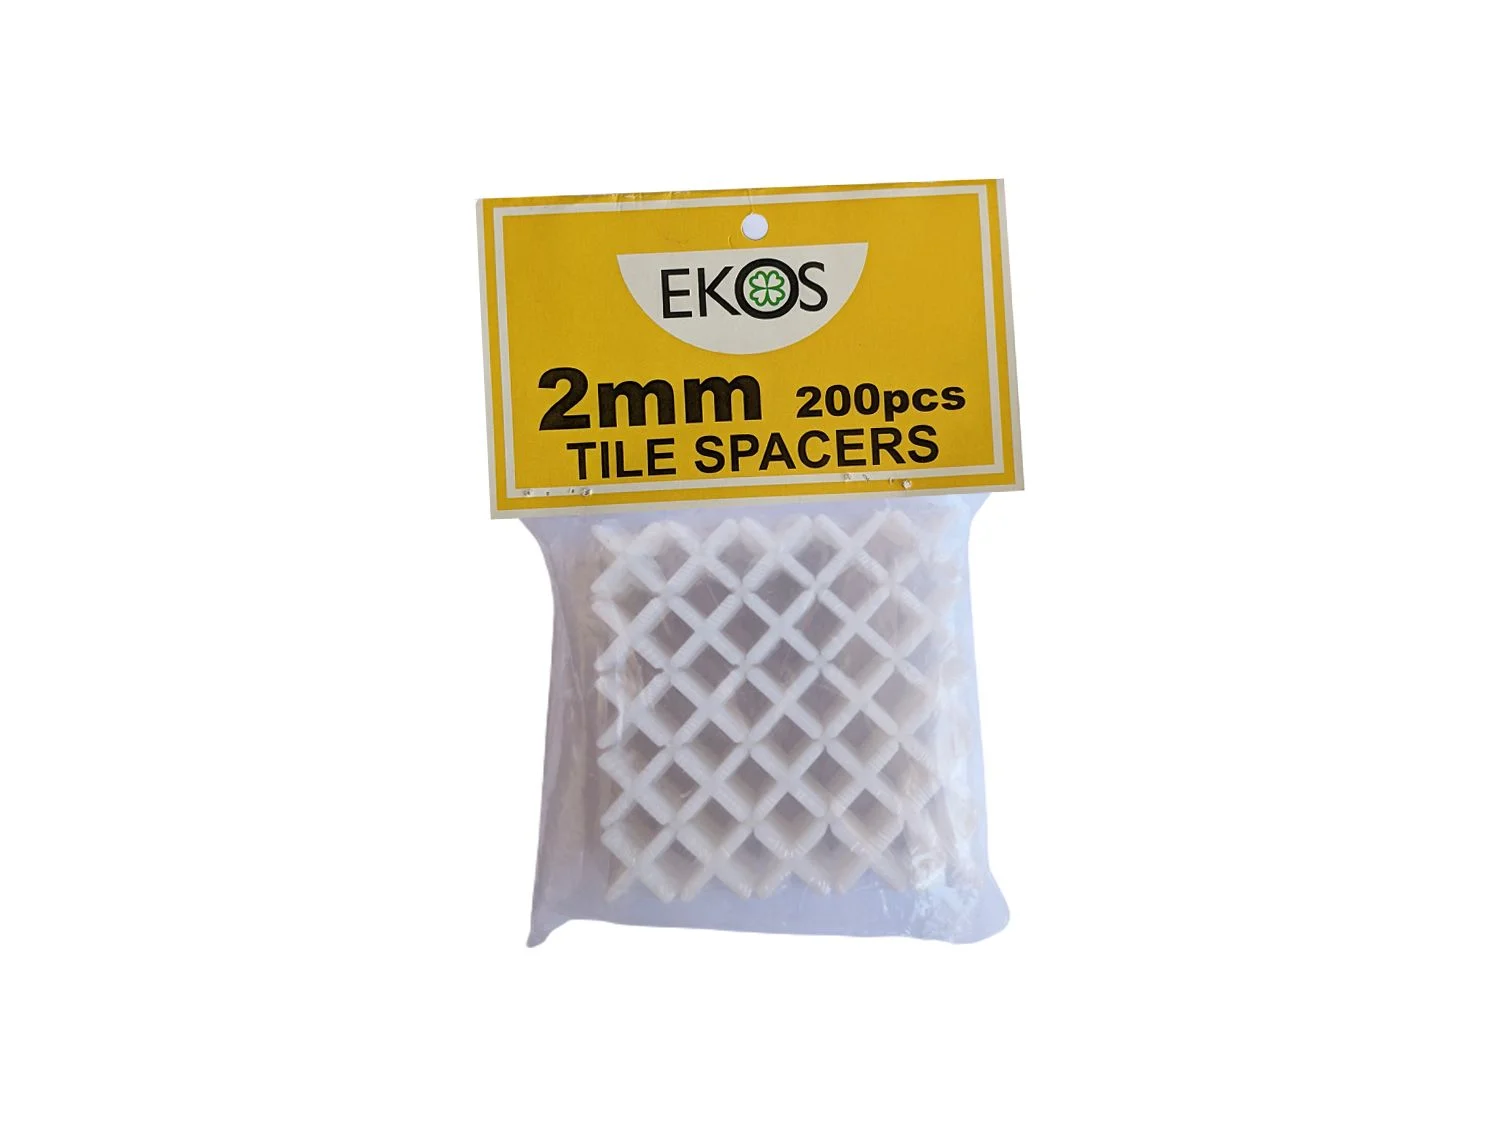 ekos-tile-spacers-2mm